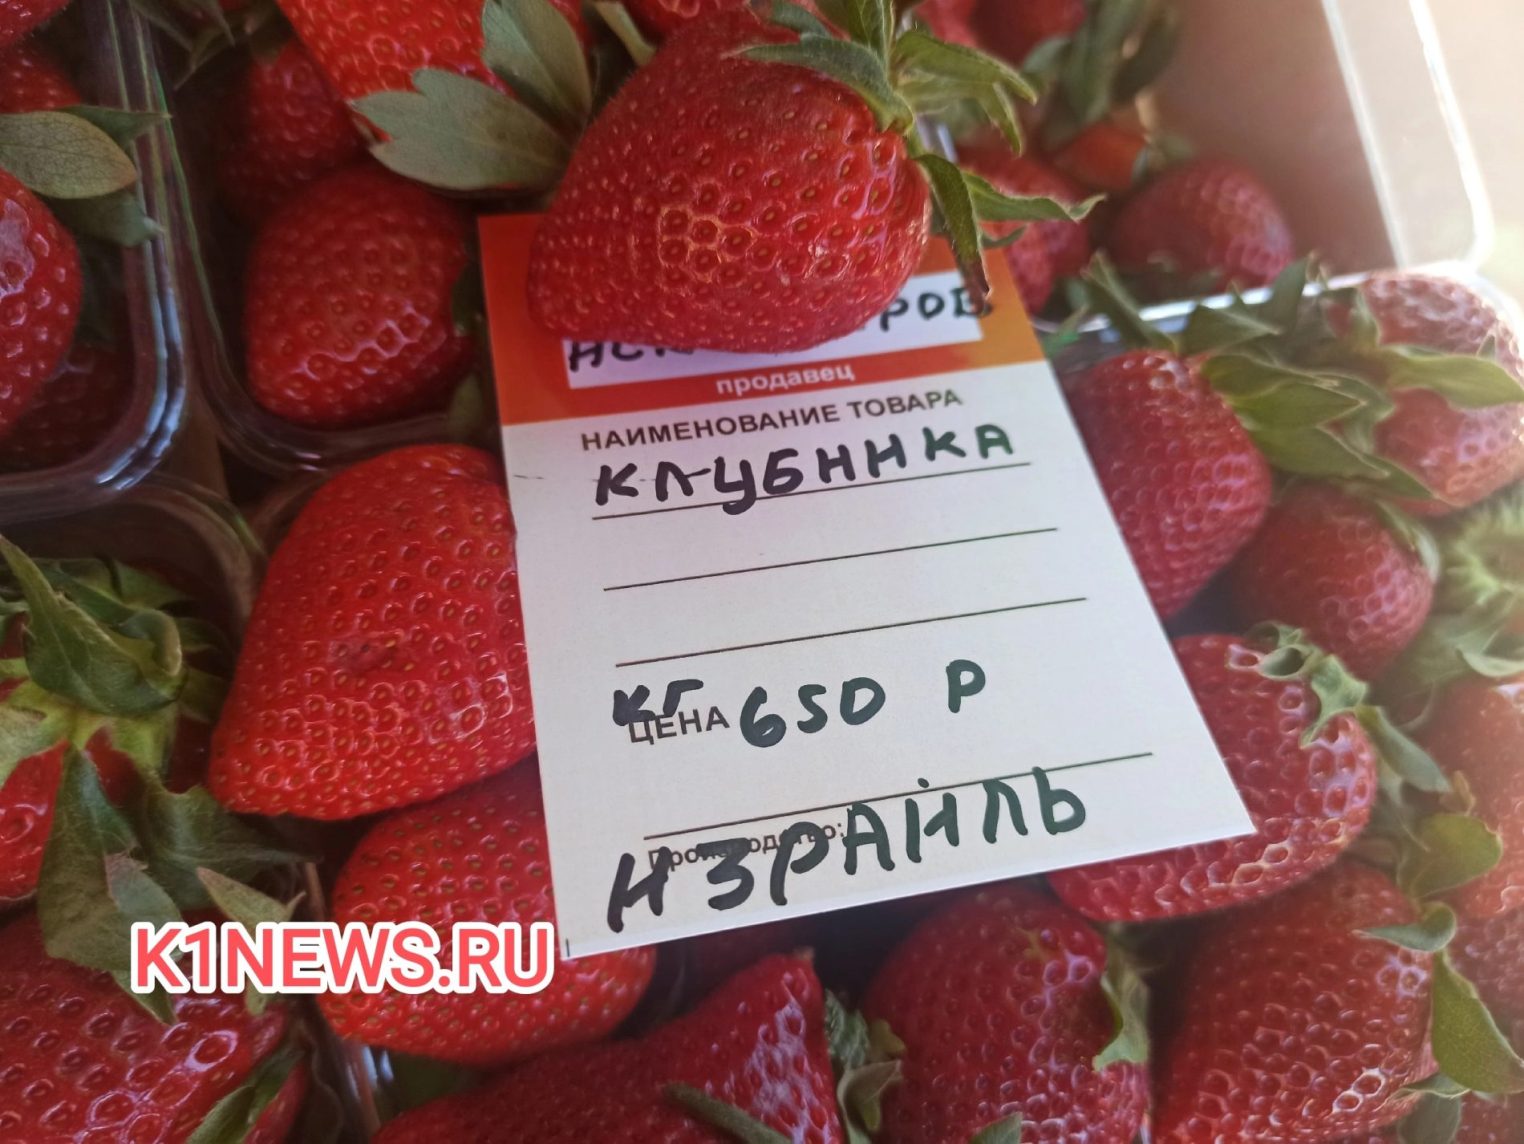 Почти даром: клубнику в Костроме продают по 600 рублей, голубику по 2500